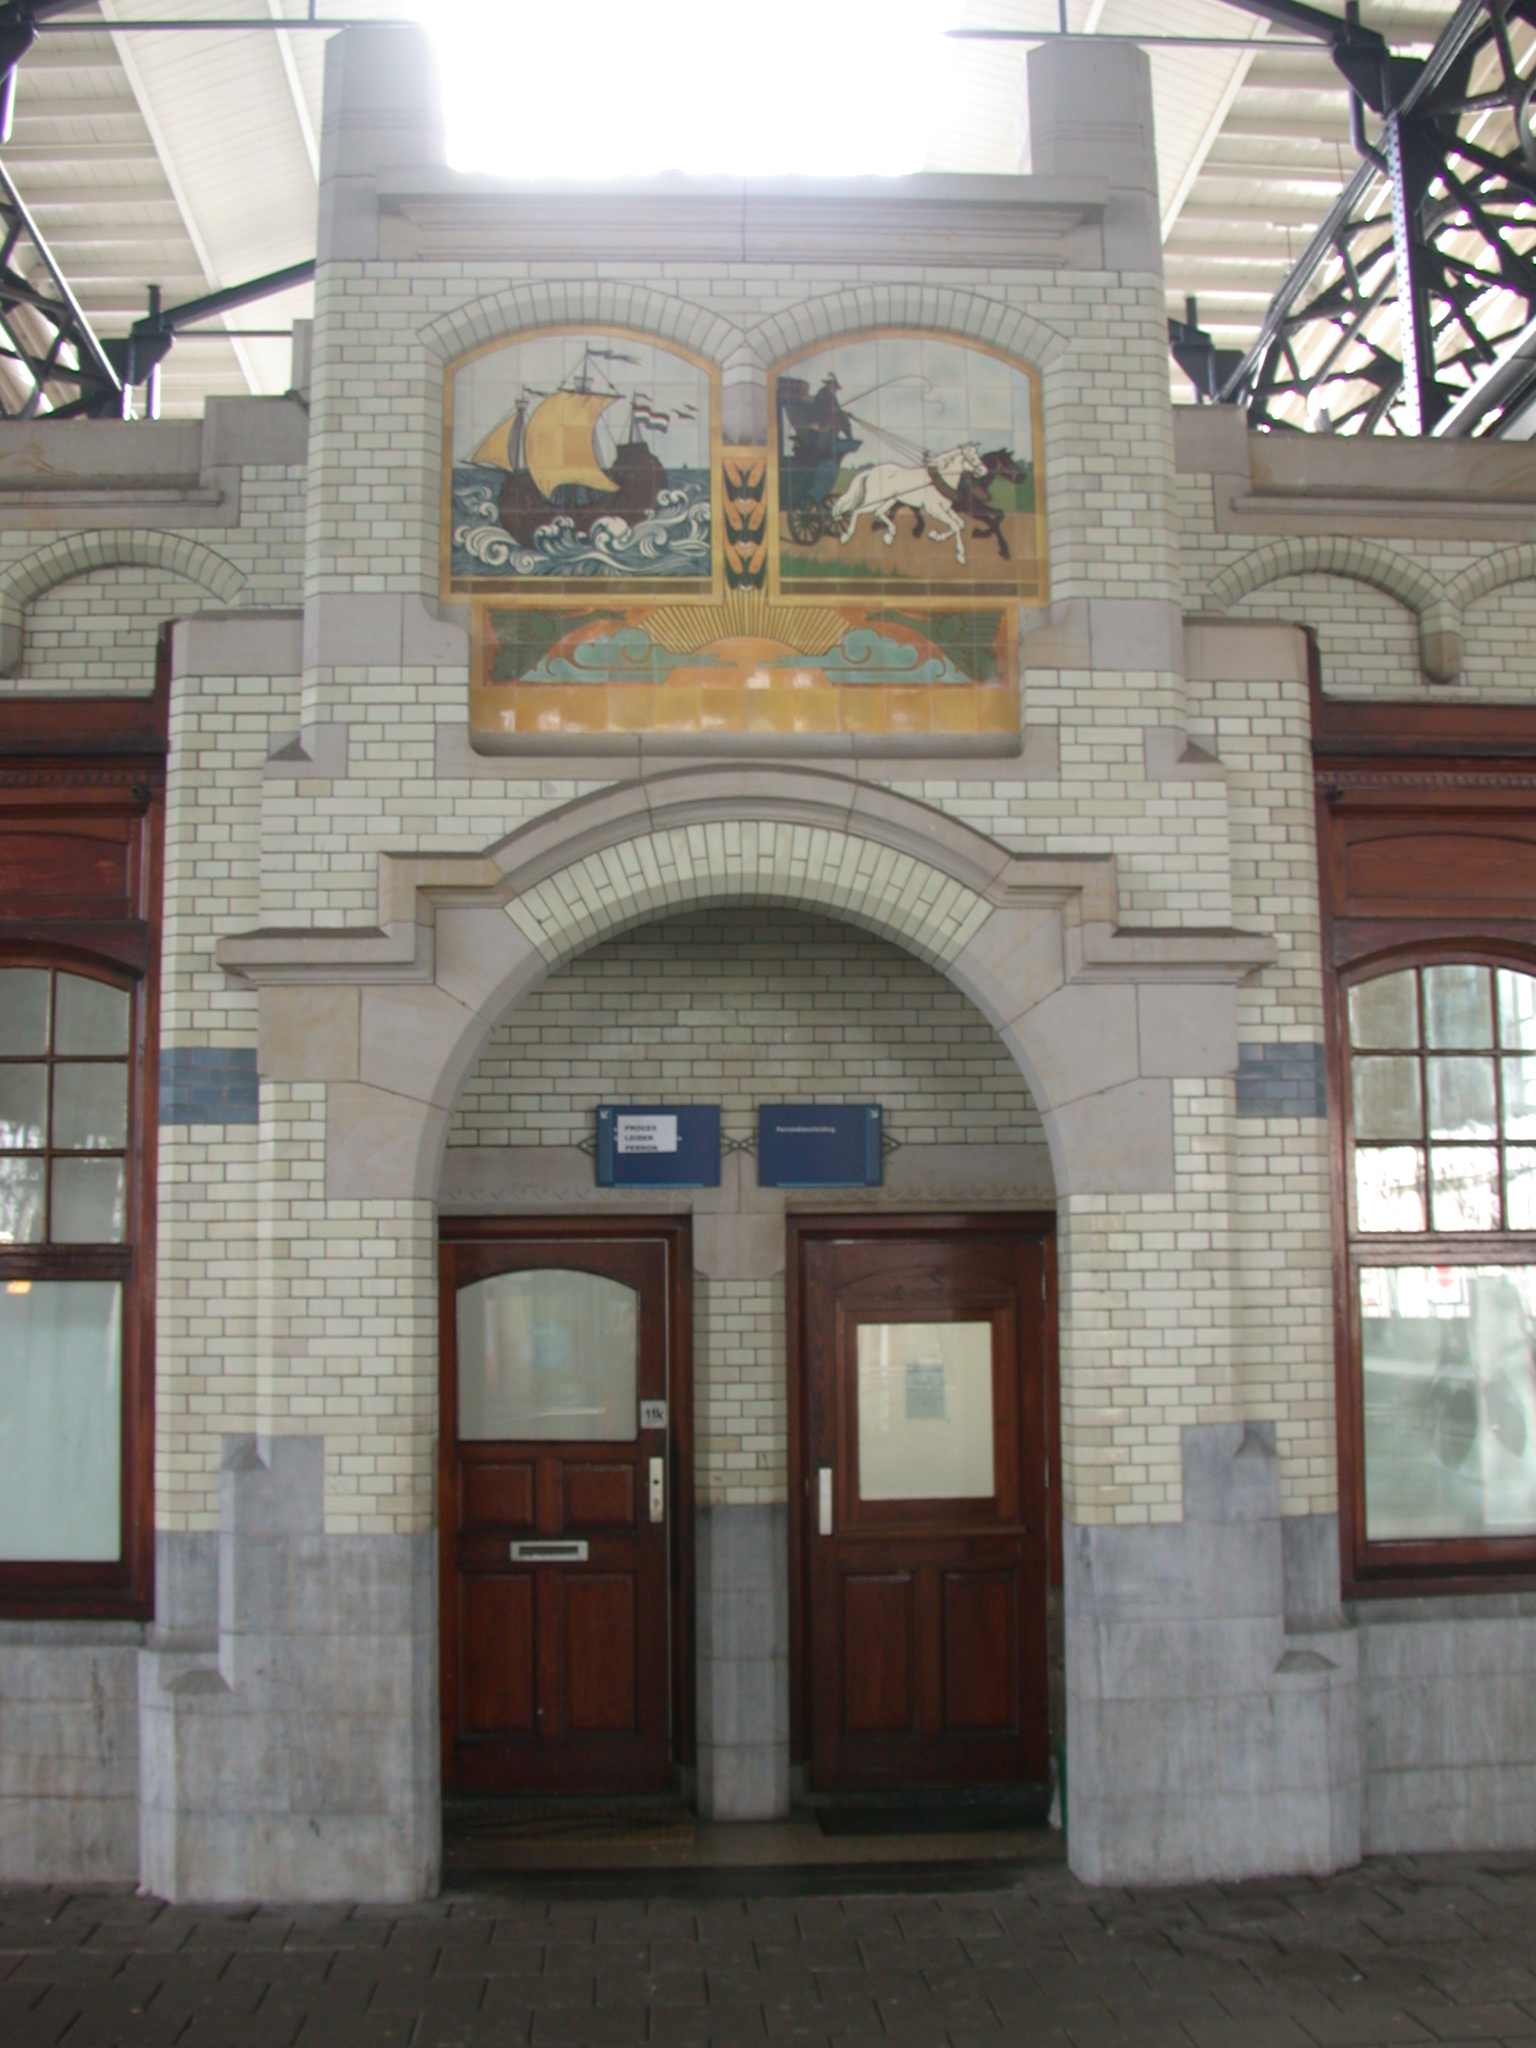 Haarlem central station wall door windows